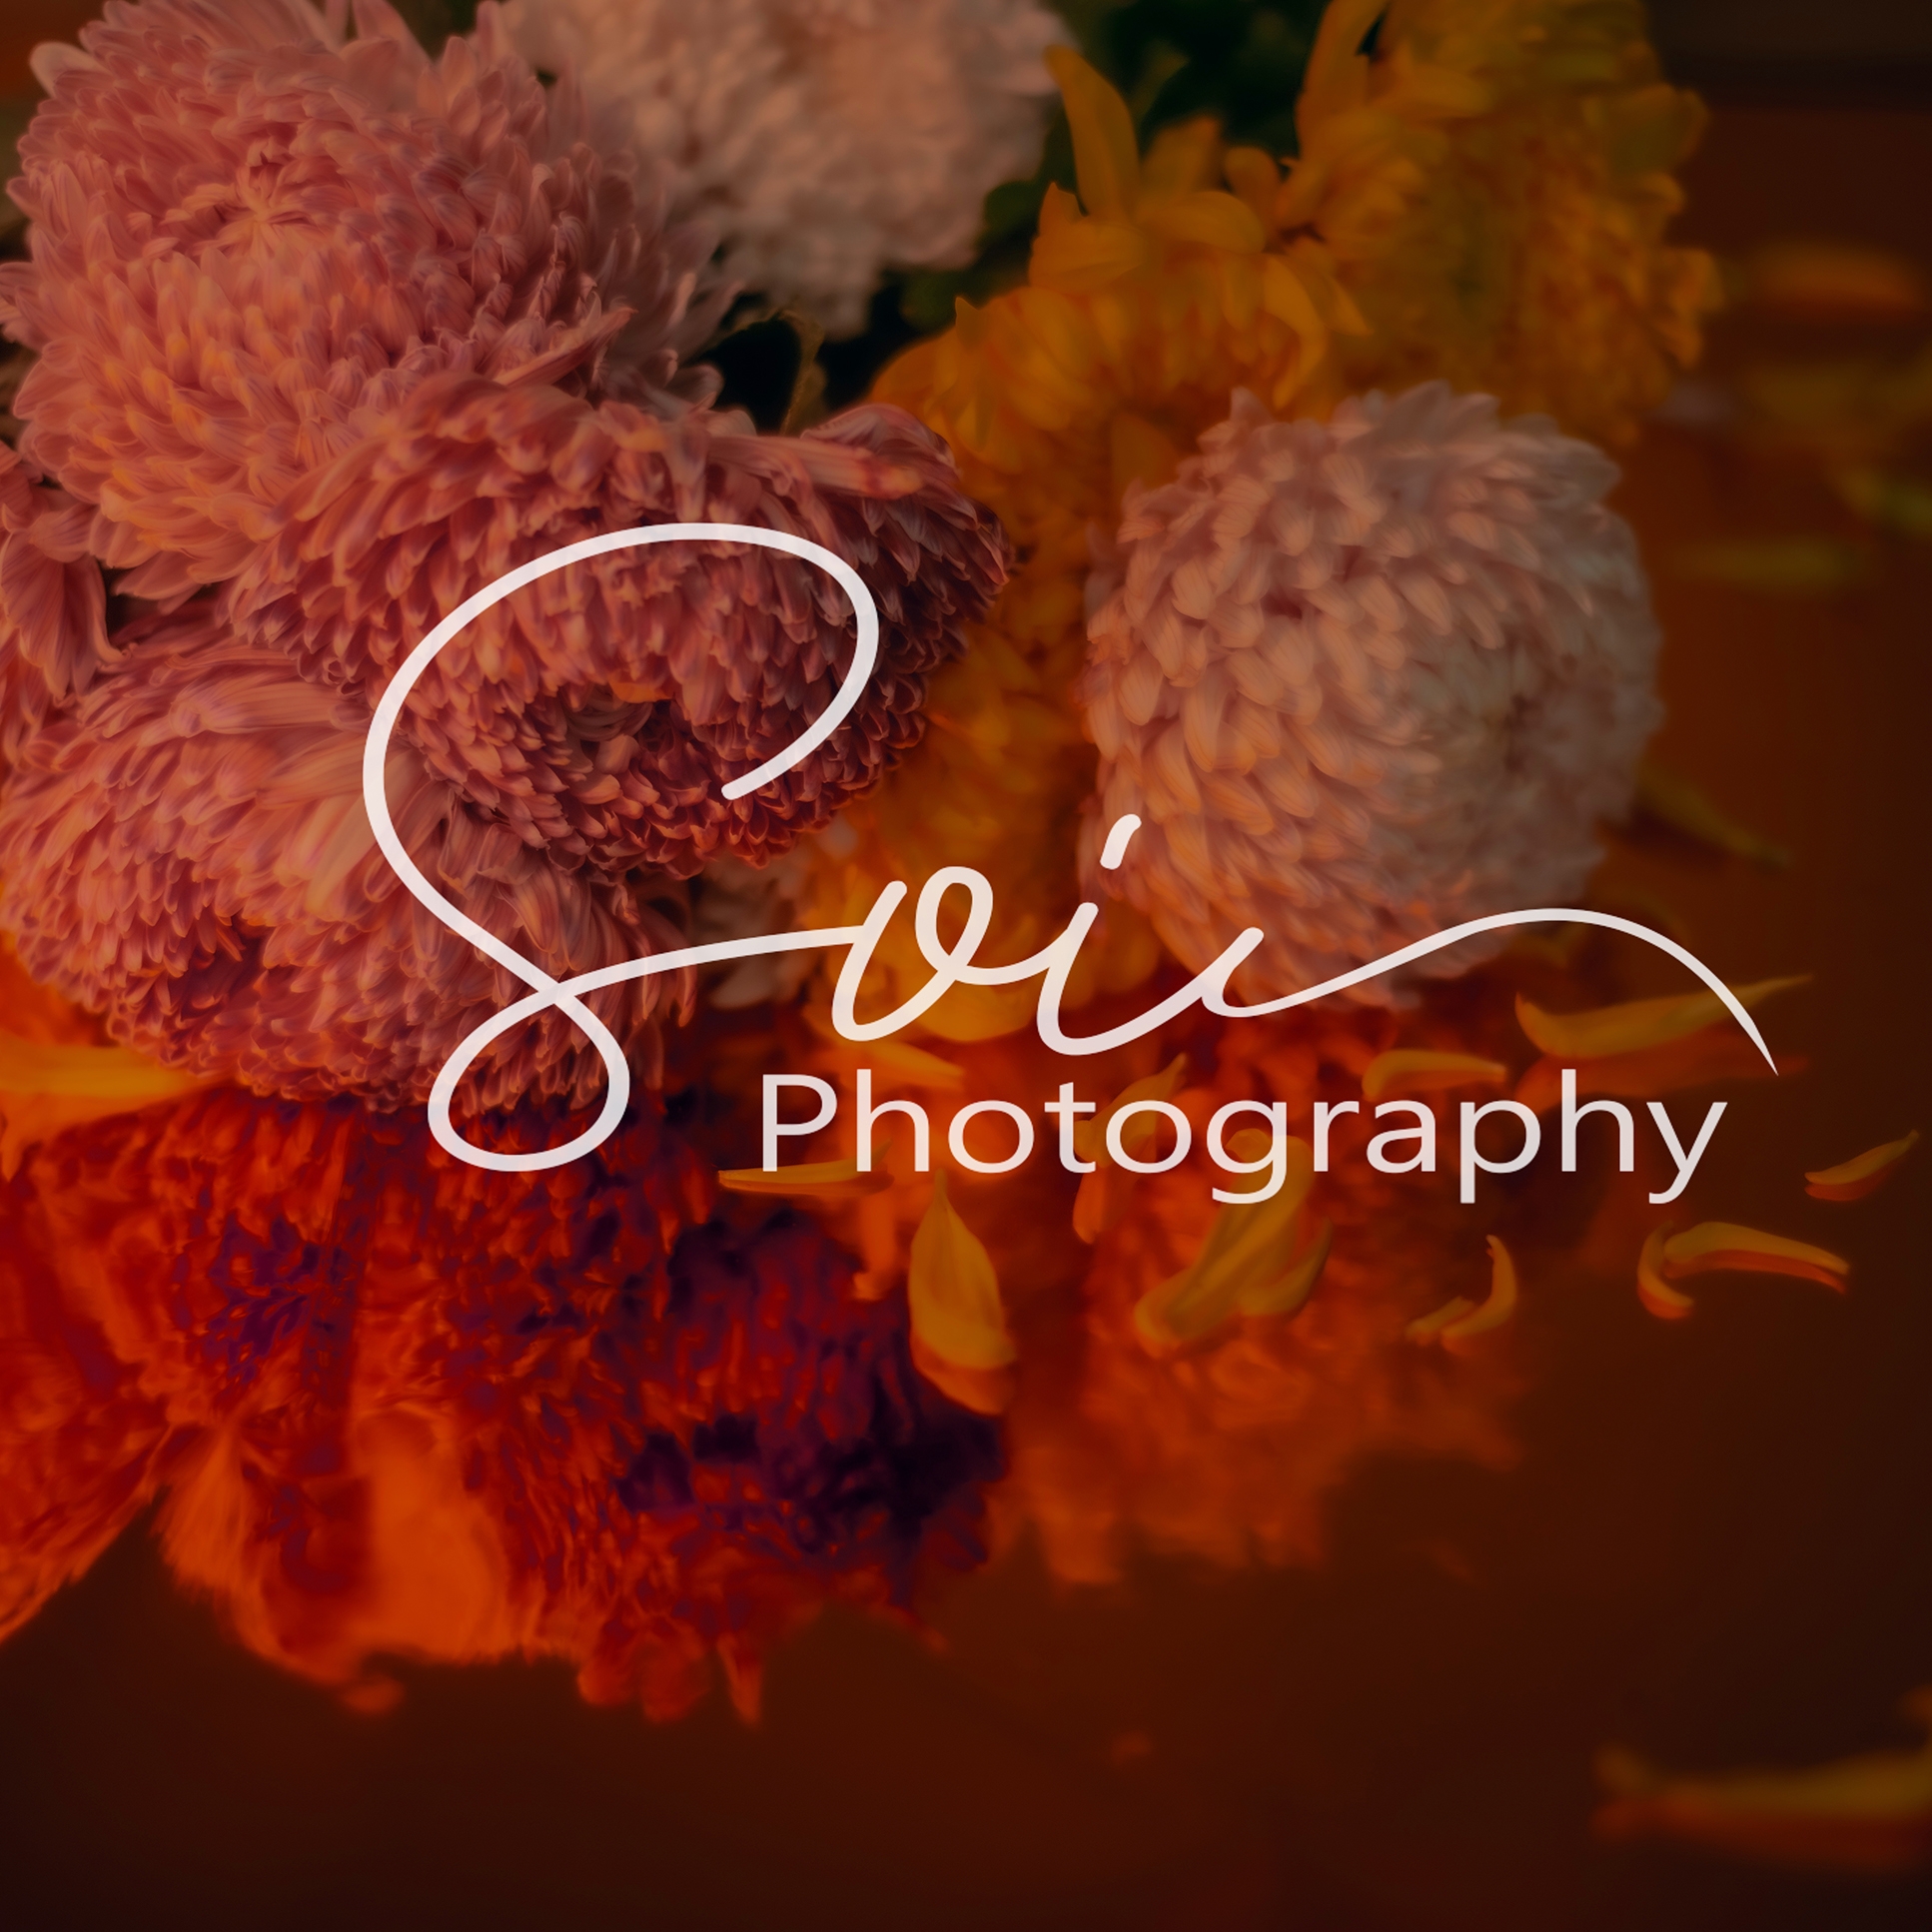 Soi Photography | 自助婚紗攝影師 - 台中攝影工作室